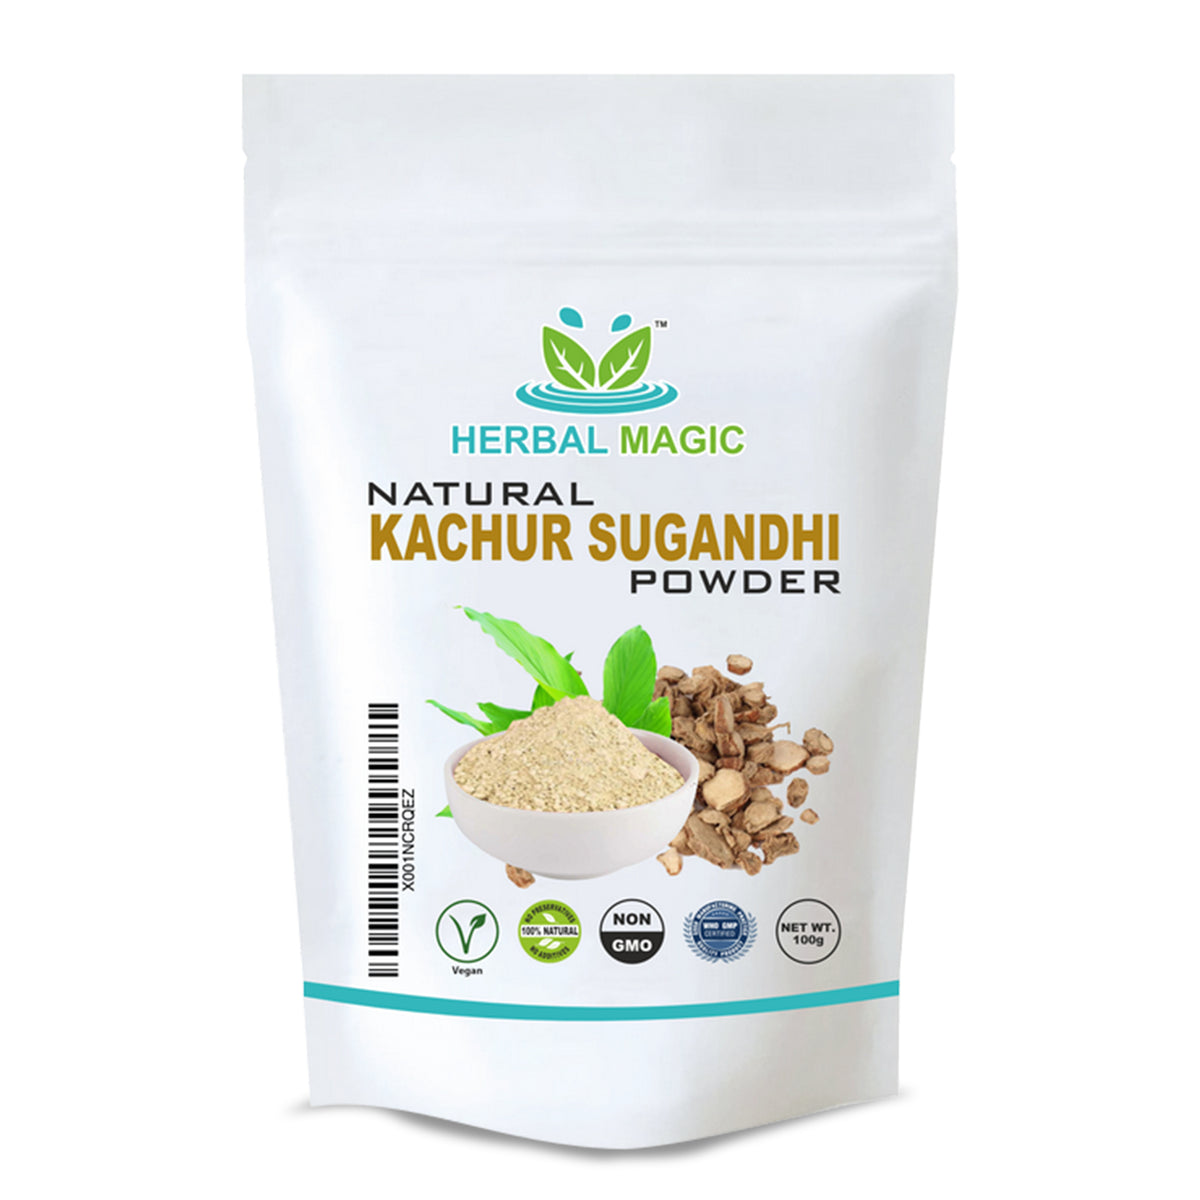 Natural Kachur Sugandhi Powder